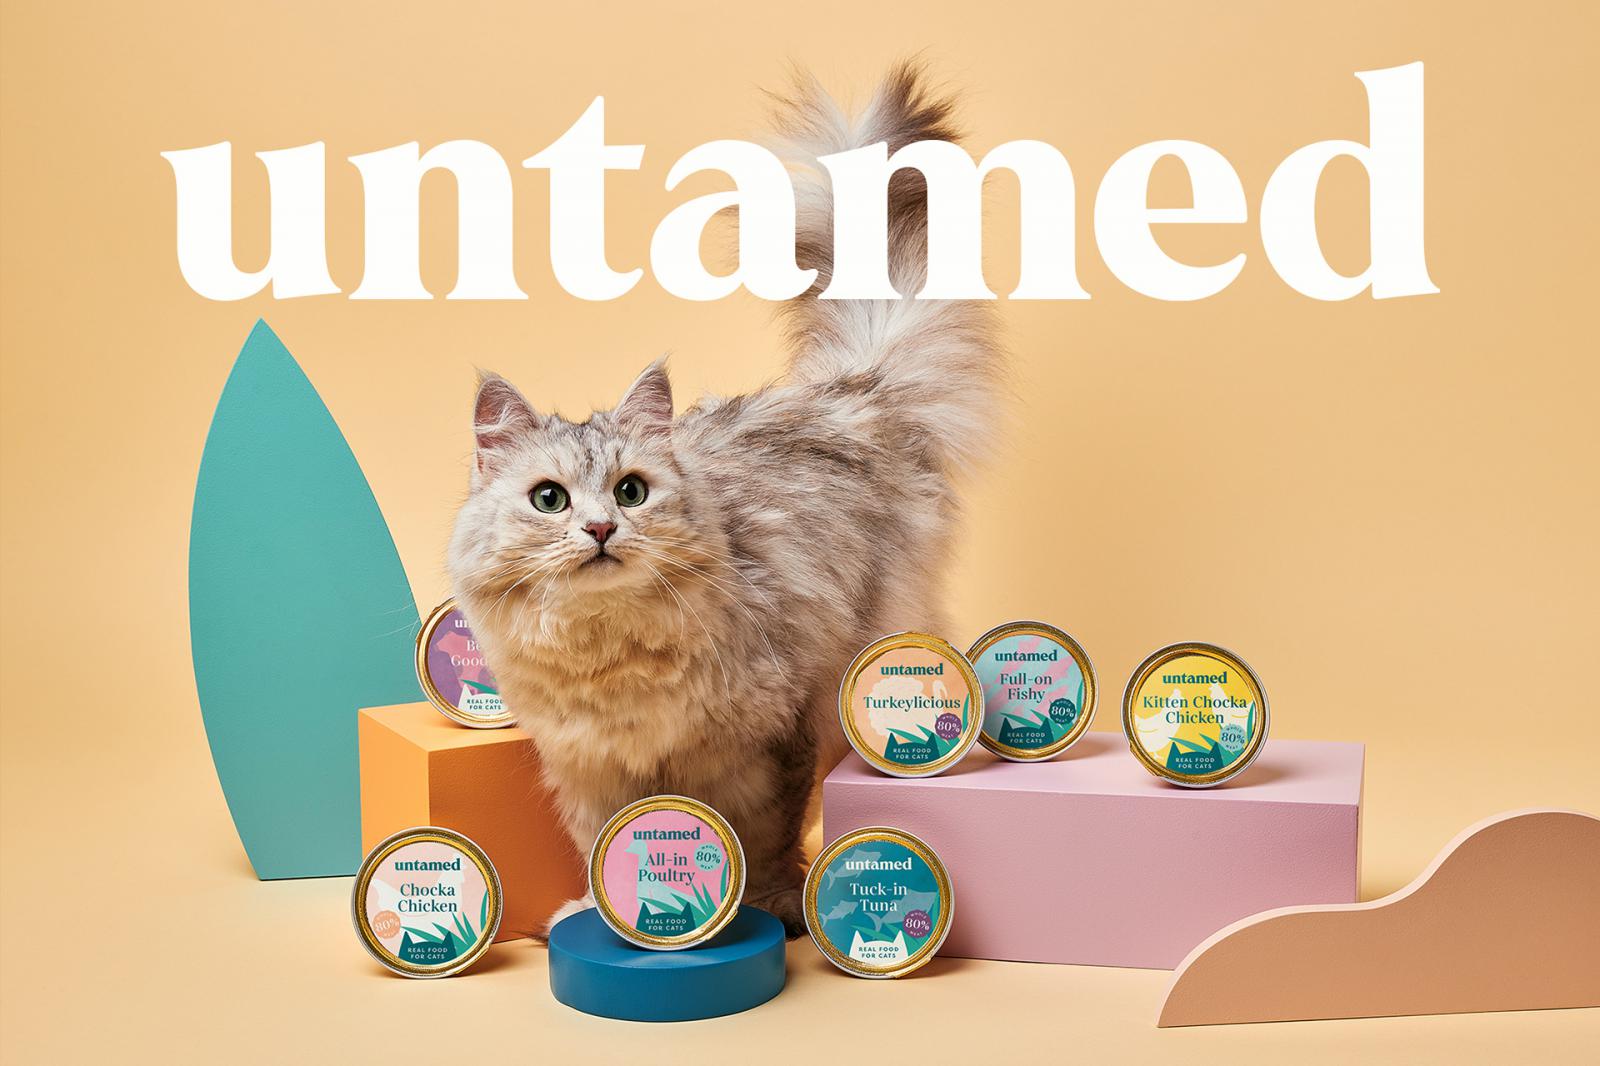 猫粮包装设计 猫粮包装设计哪家好 上海猫粮包装设计公司 宠物食品包装设计公司 第1张